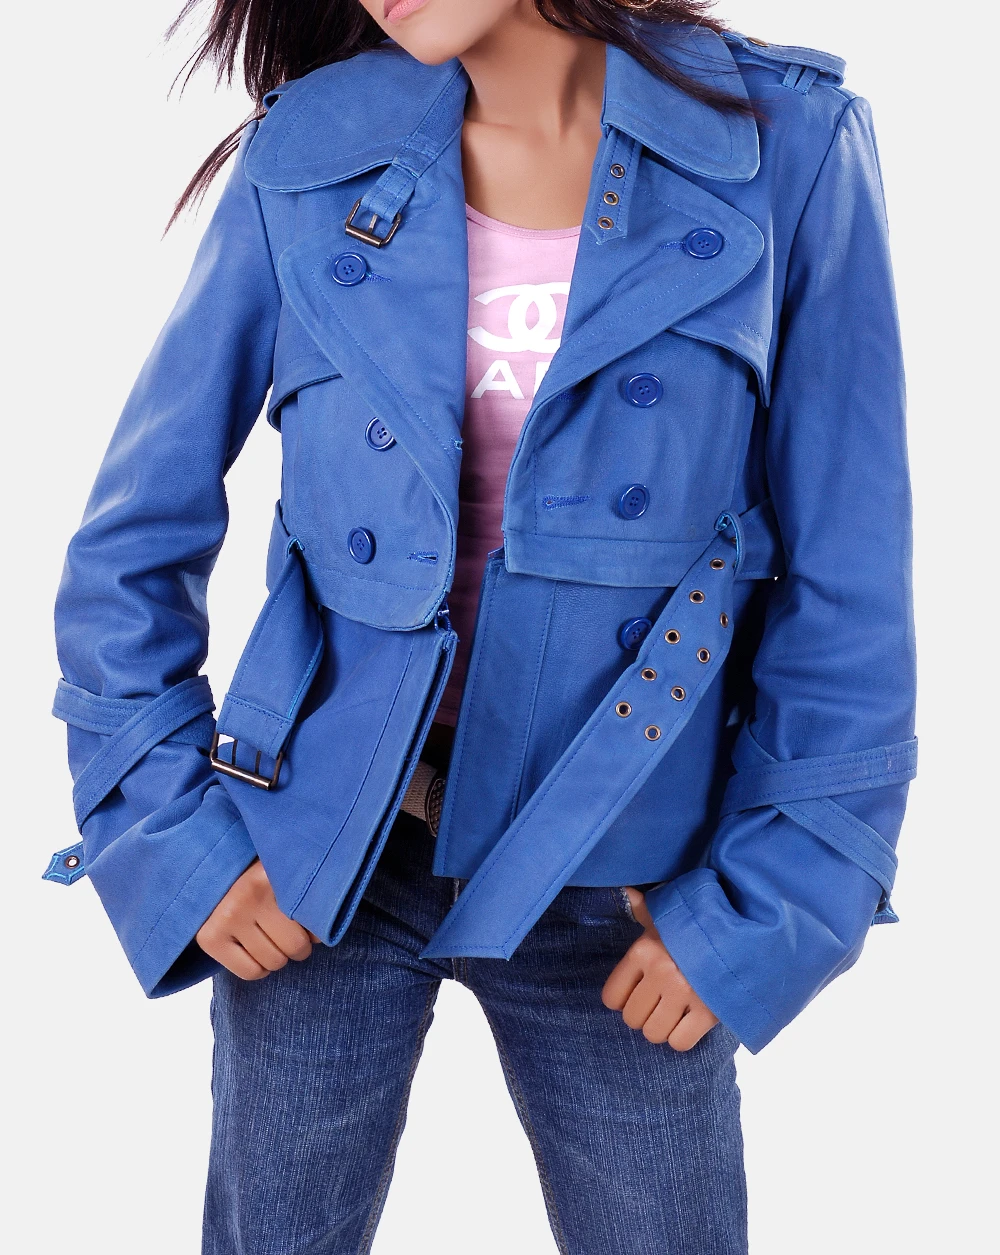 Ruby women leather jacket blue